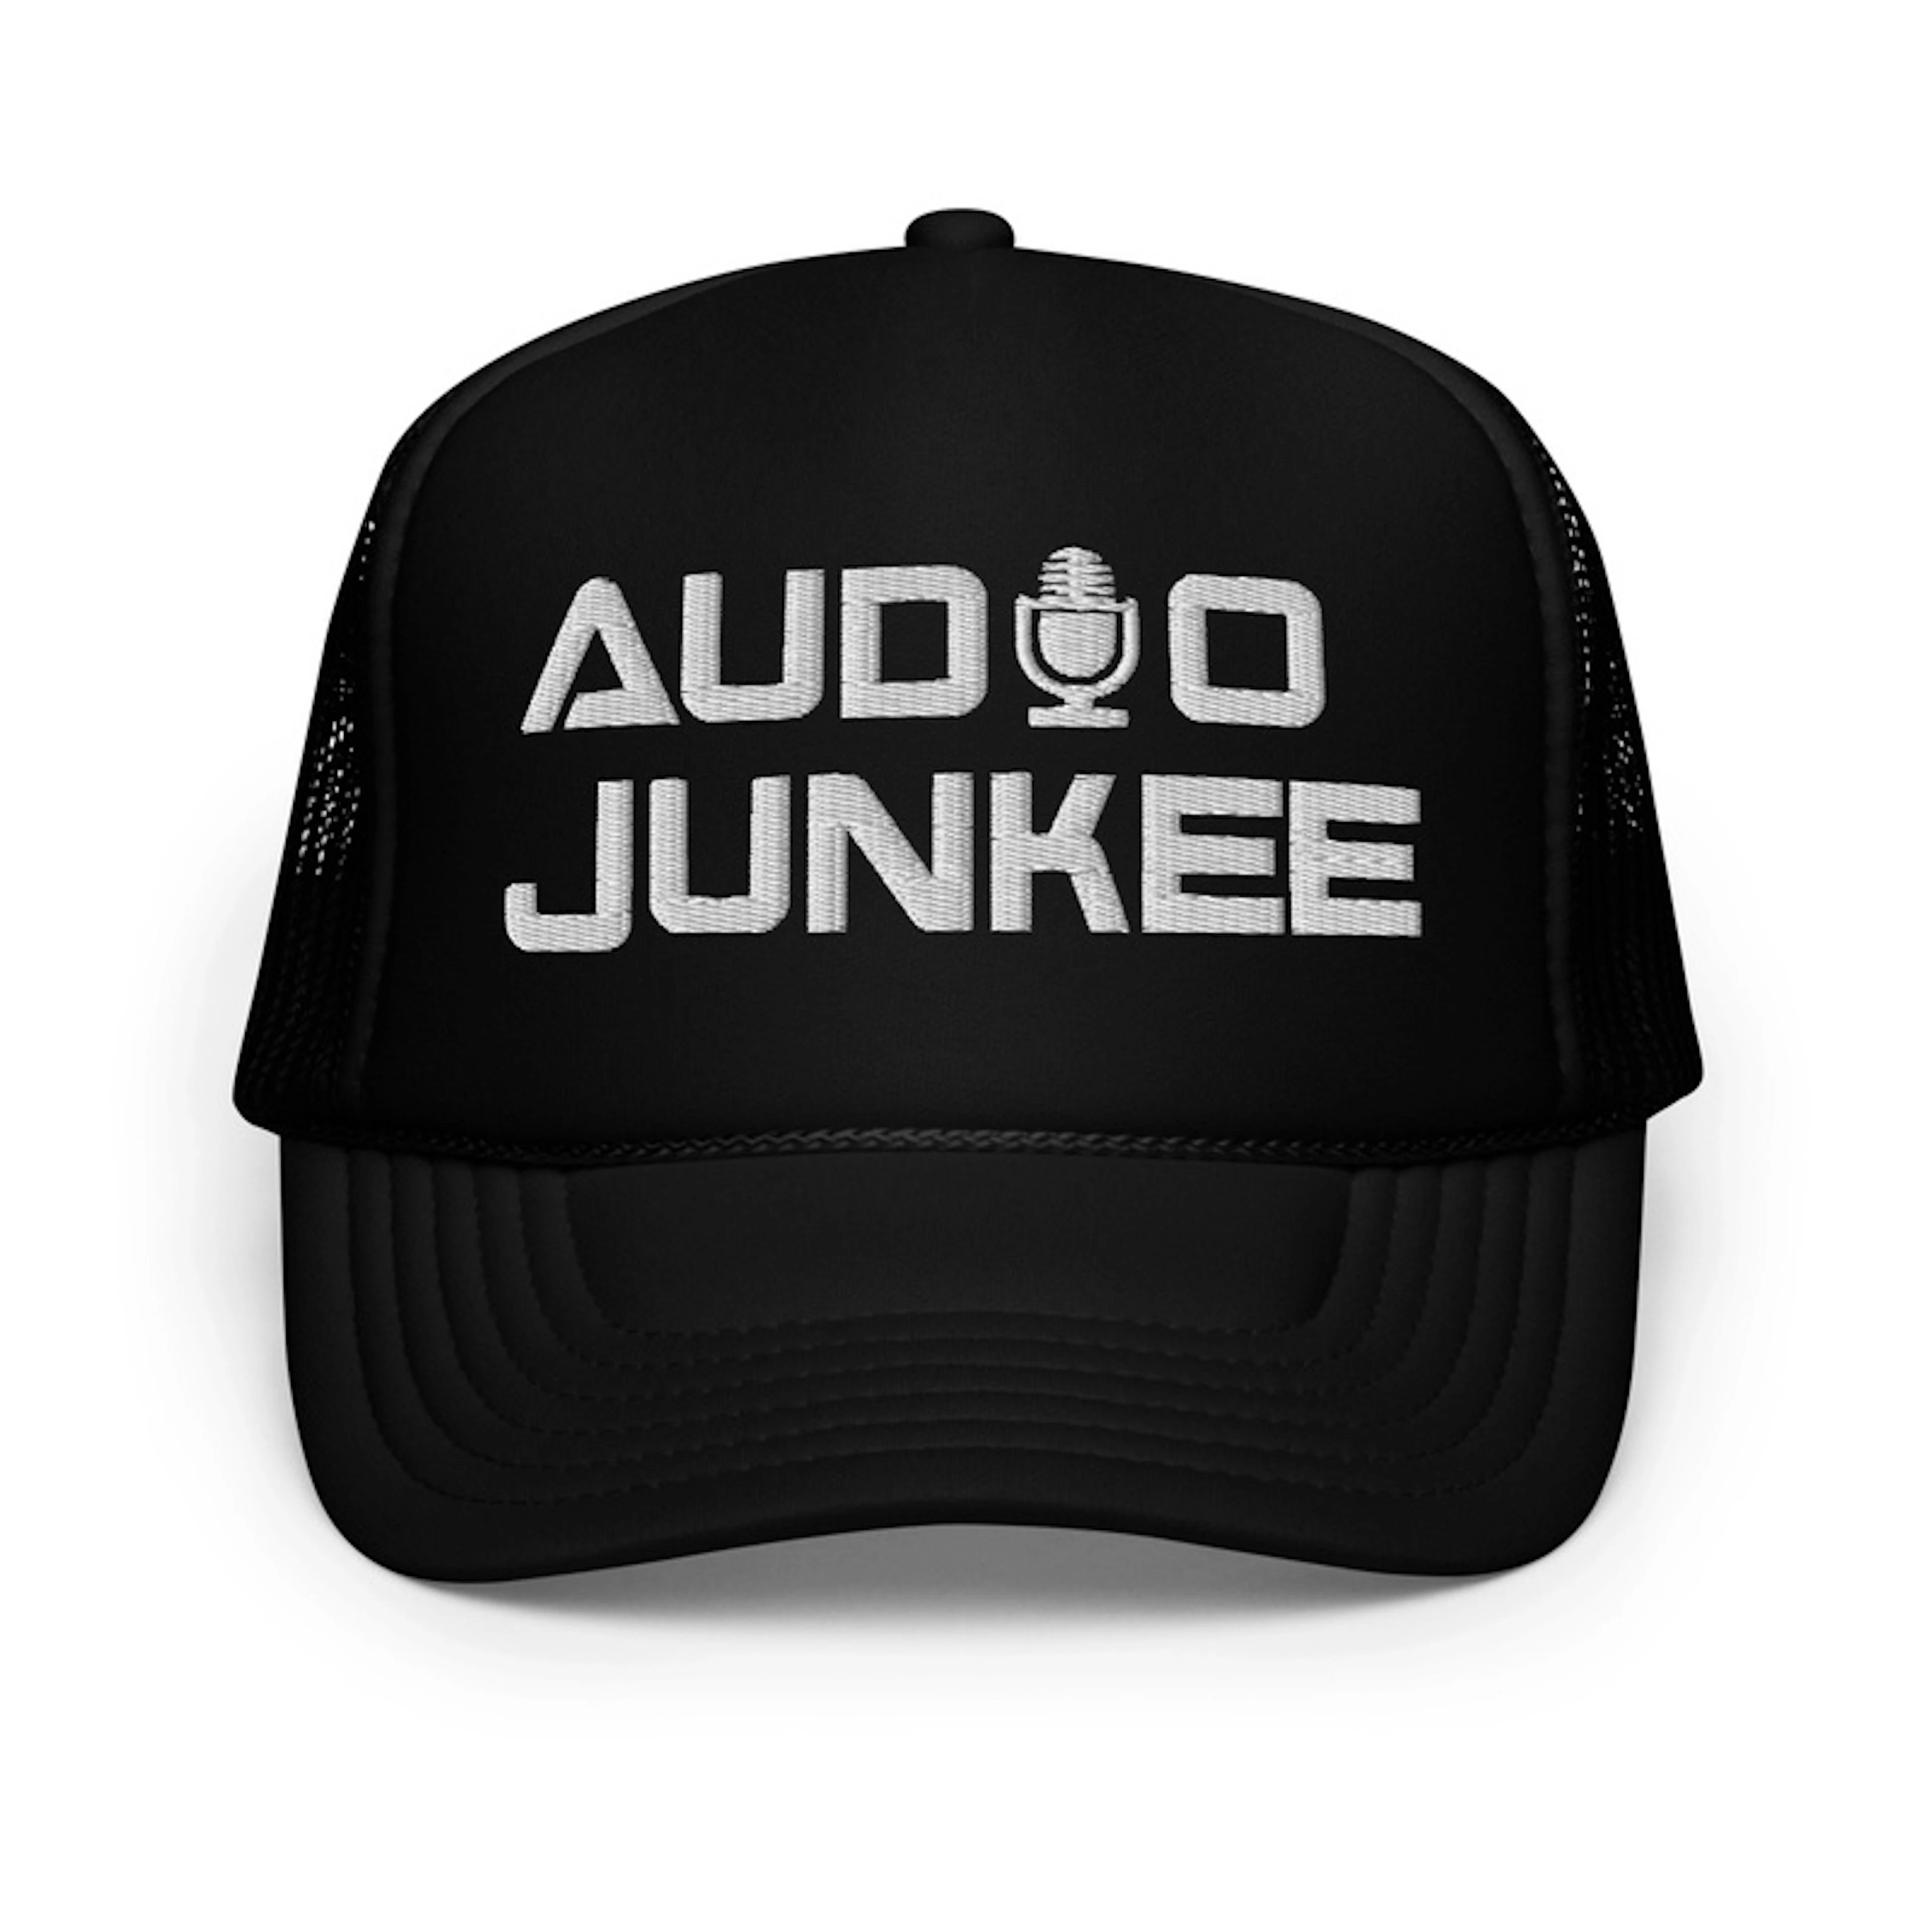 Audio Junkee trucker